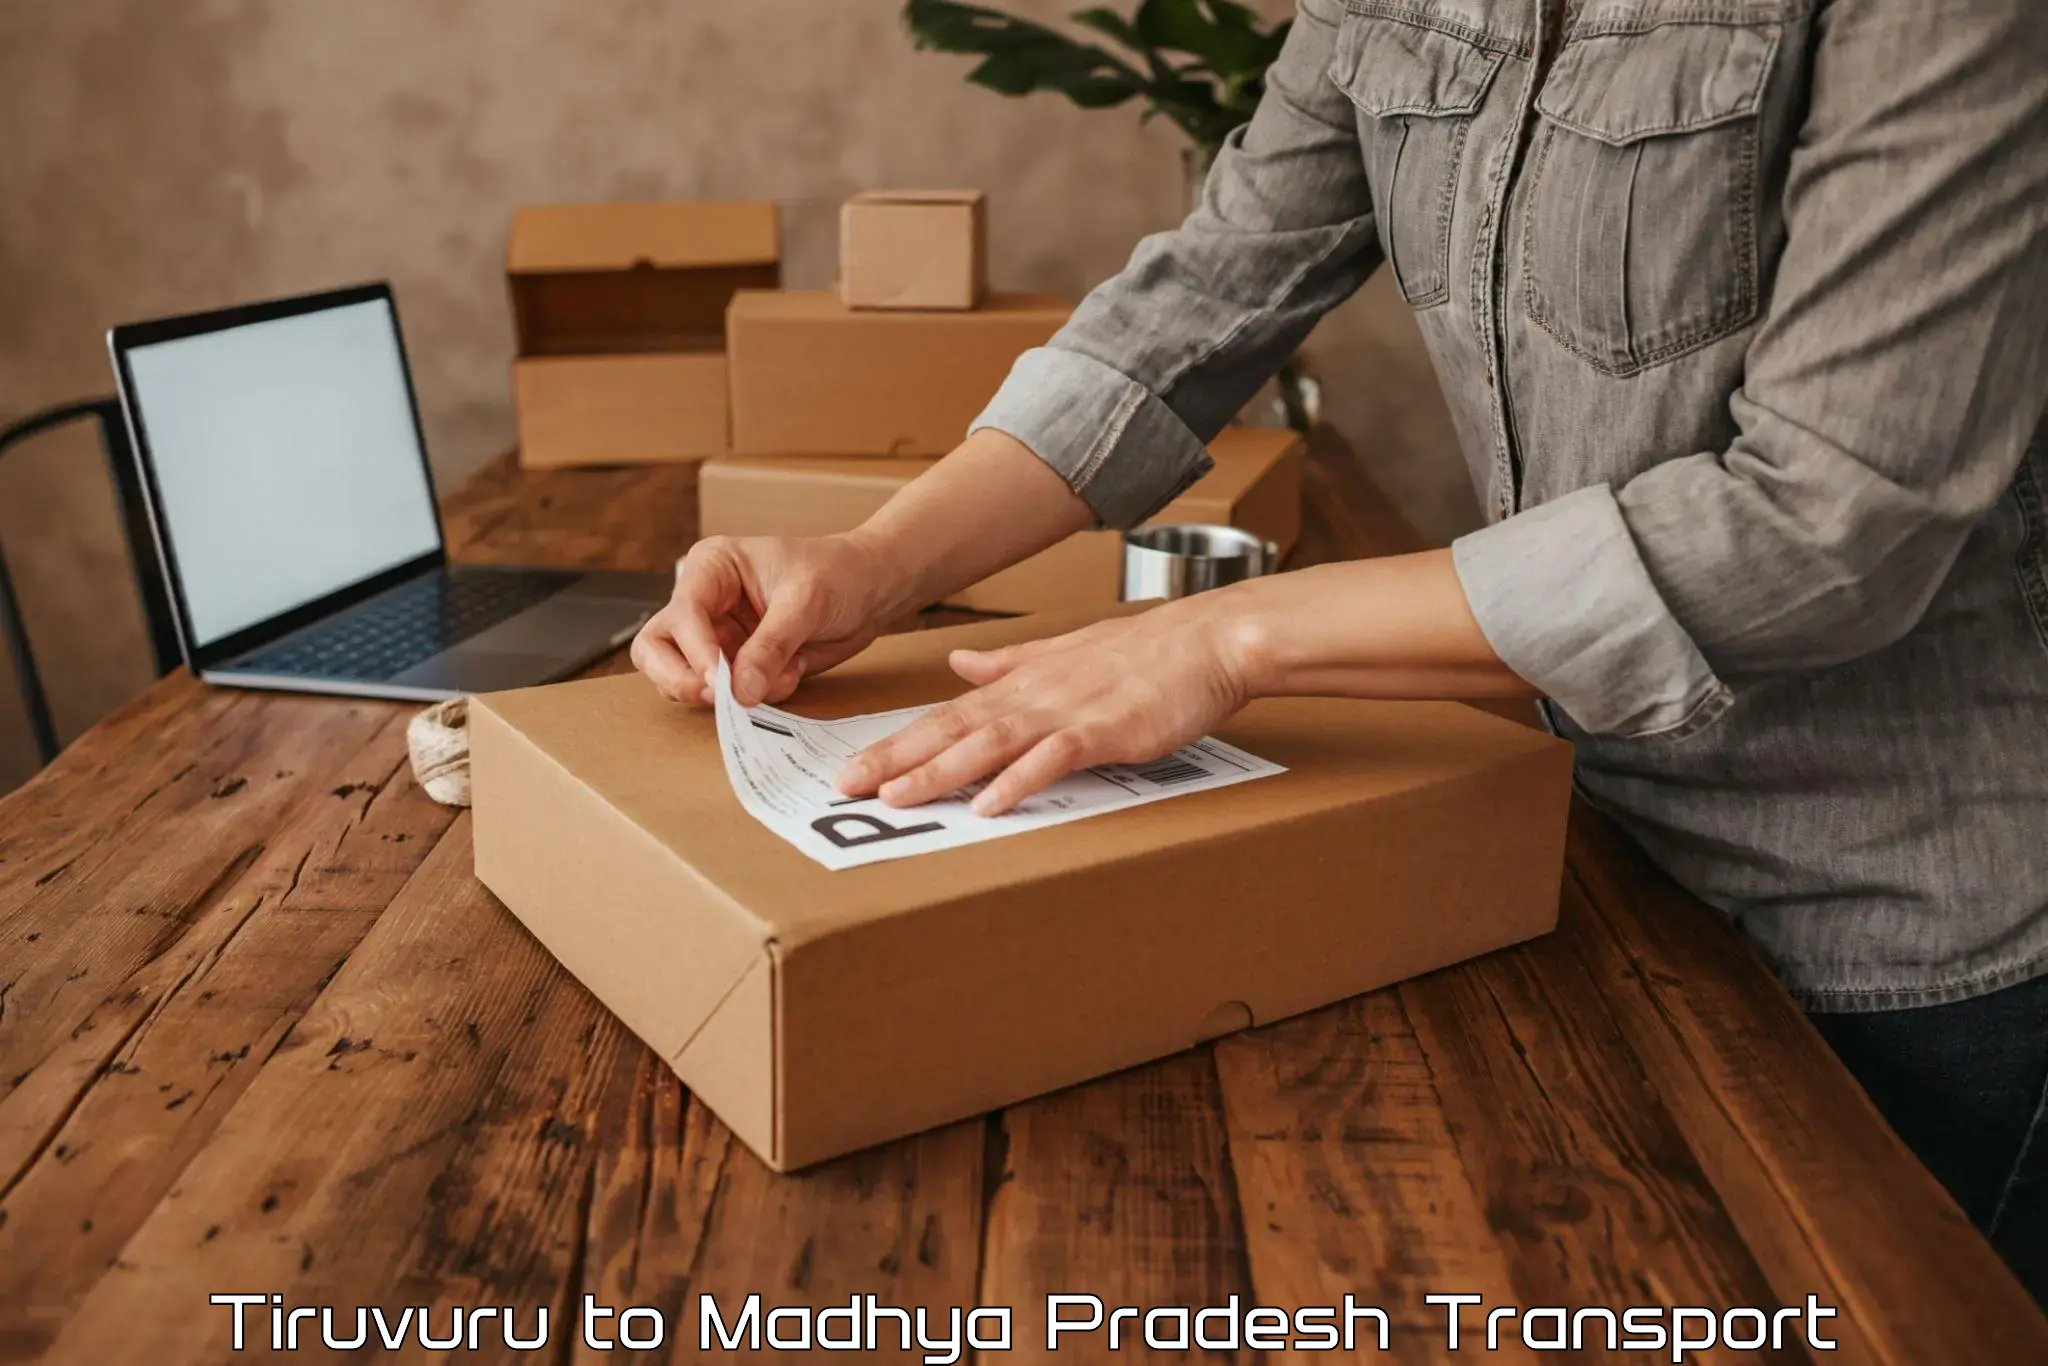 Furniture transport service Tiruvuru to Maksudangarh